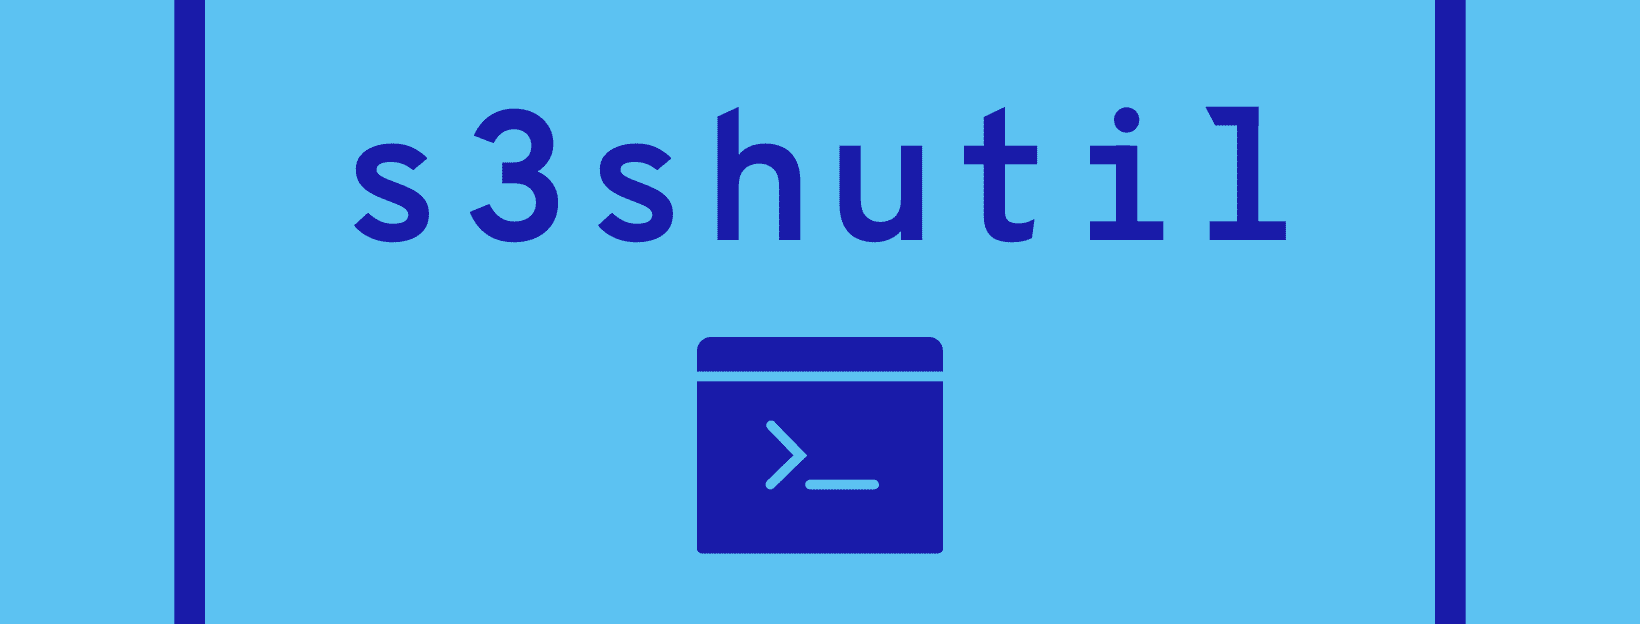 s3shutil logo